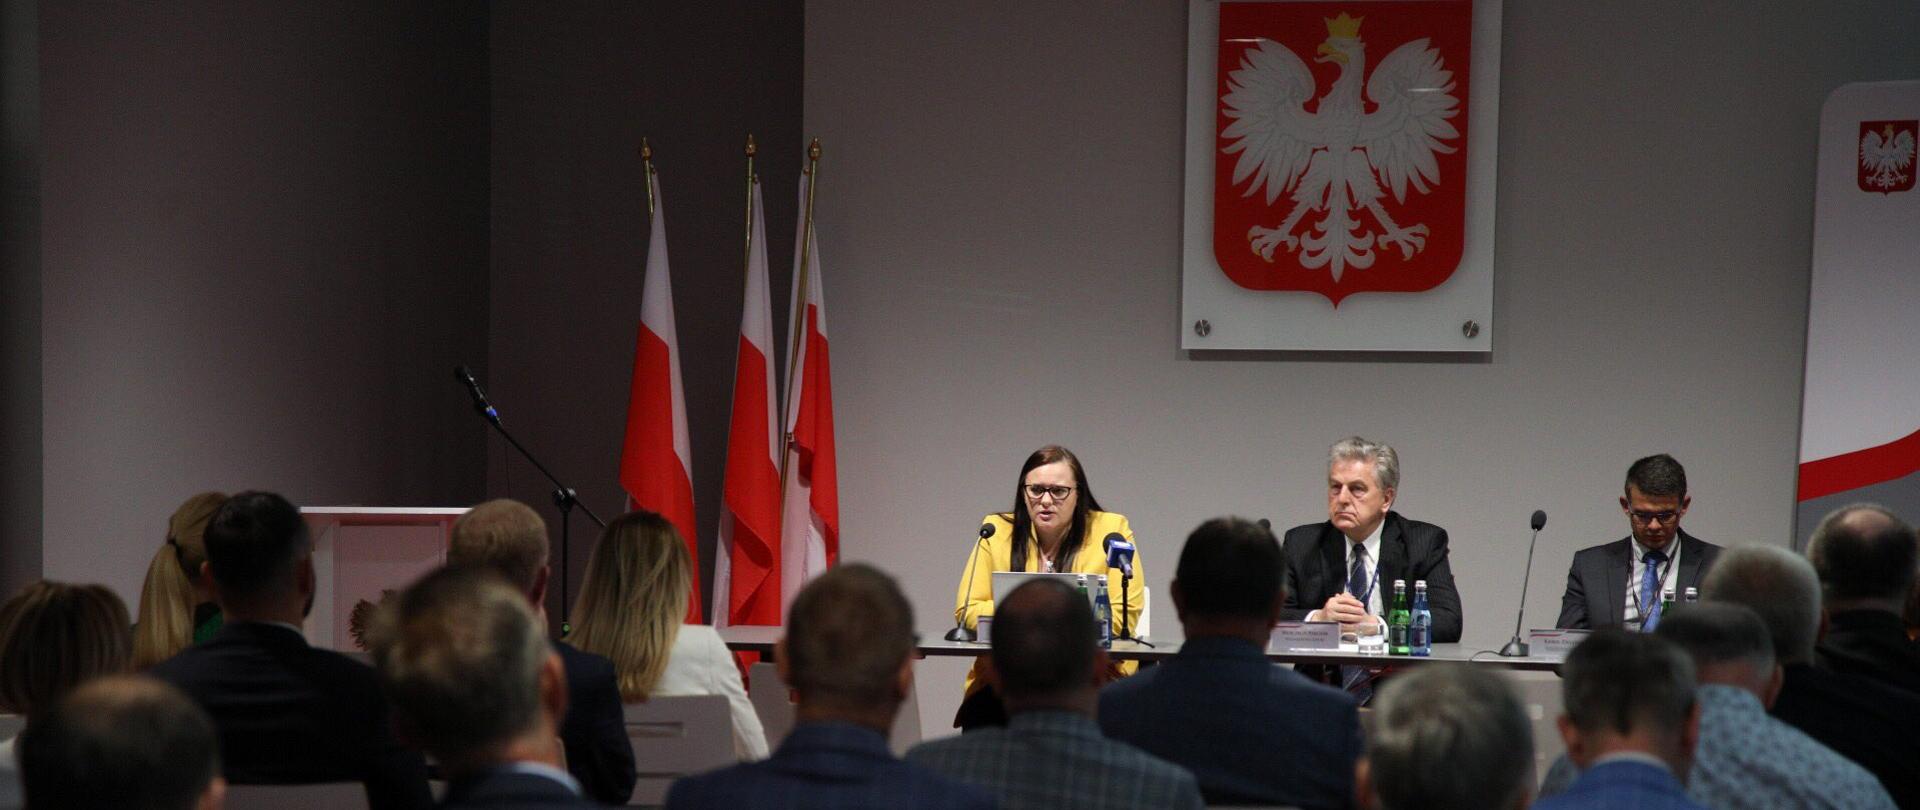 Na sali siedzi tyłem grupa ludzi. Przodem do nich przy stole siedzi od lewej minister M. Jarosińska-Jedynak